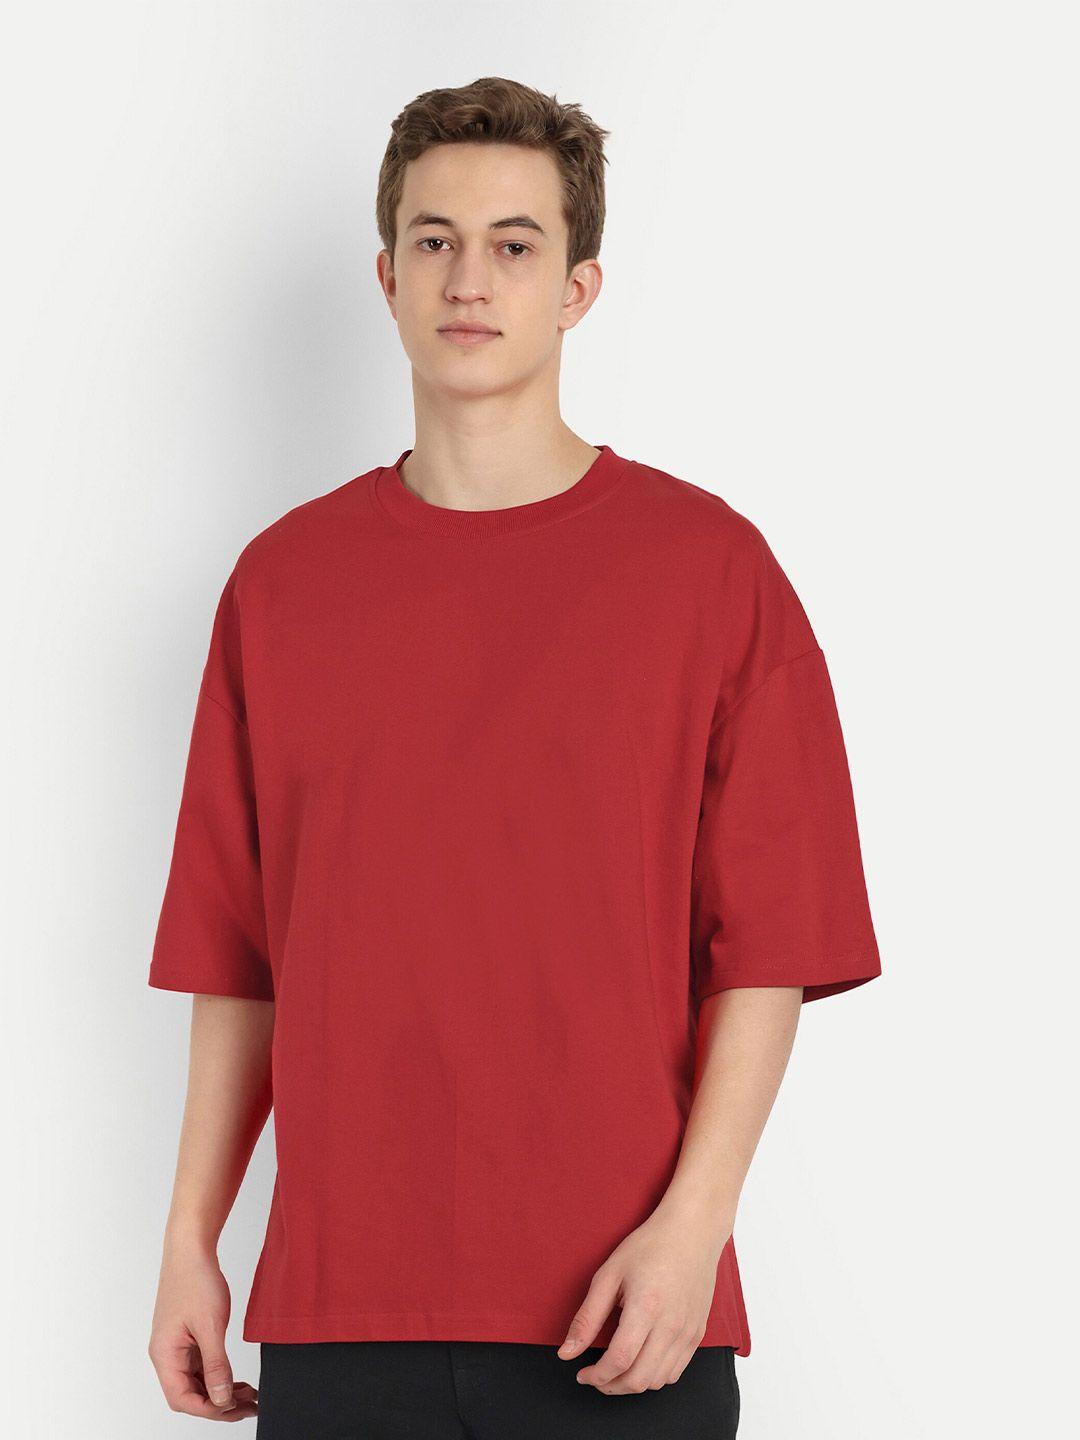 blurr round neck drop-shoulder sleeves cotton t-shirt